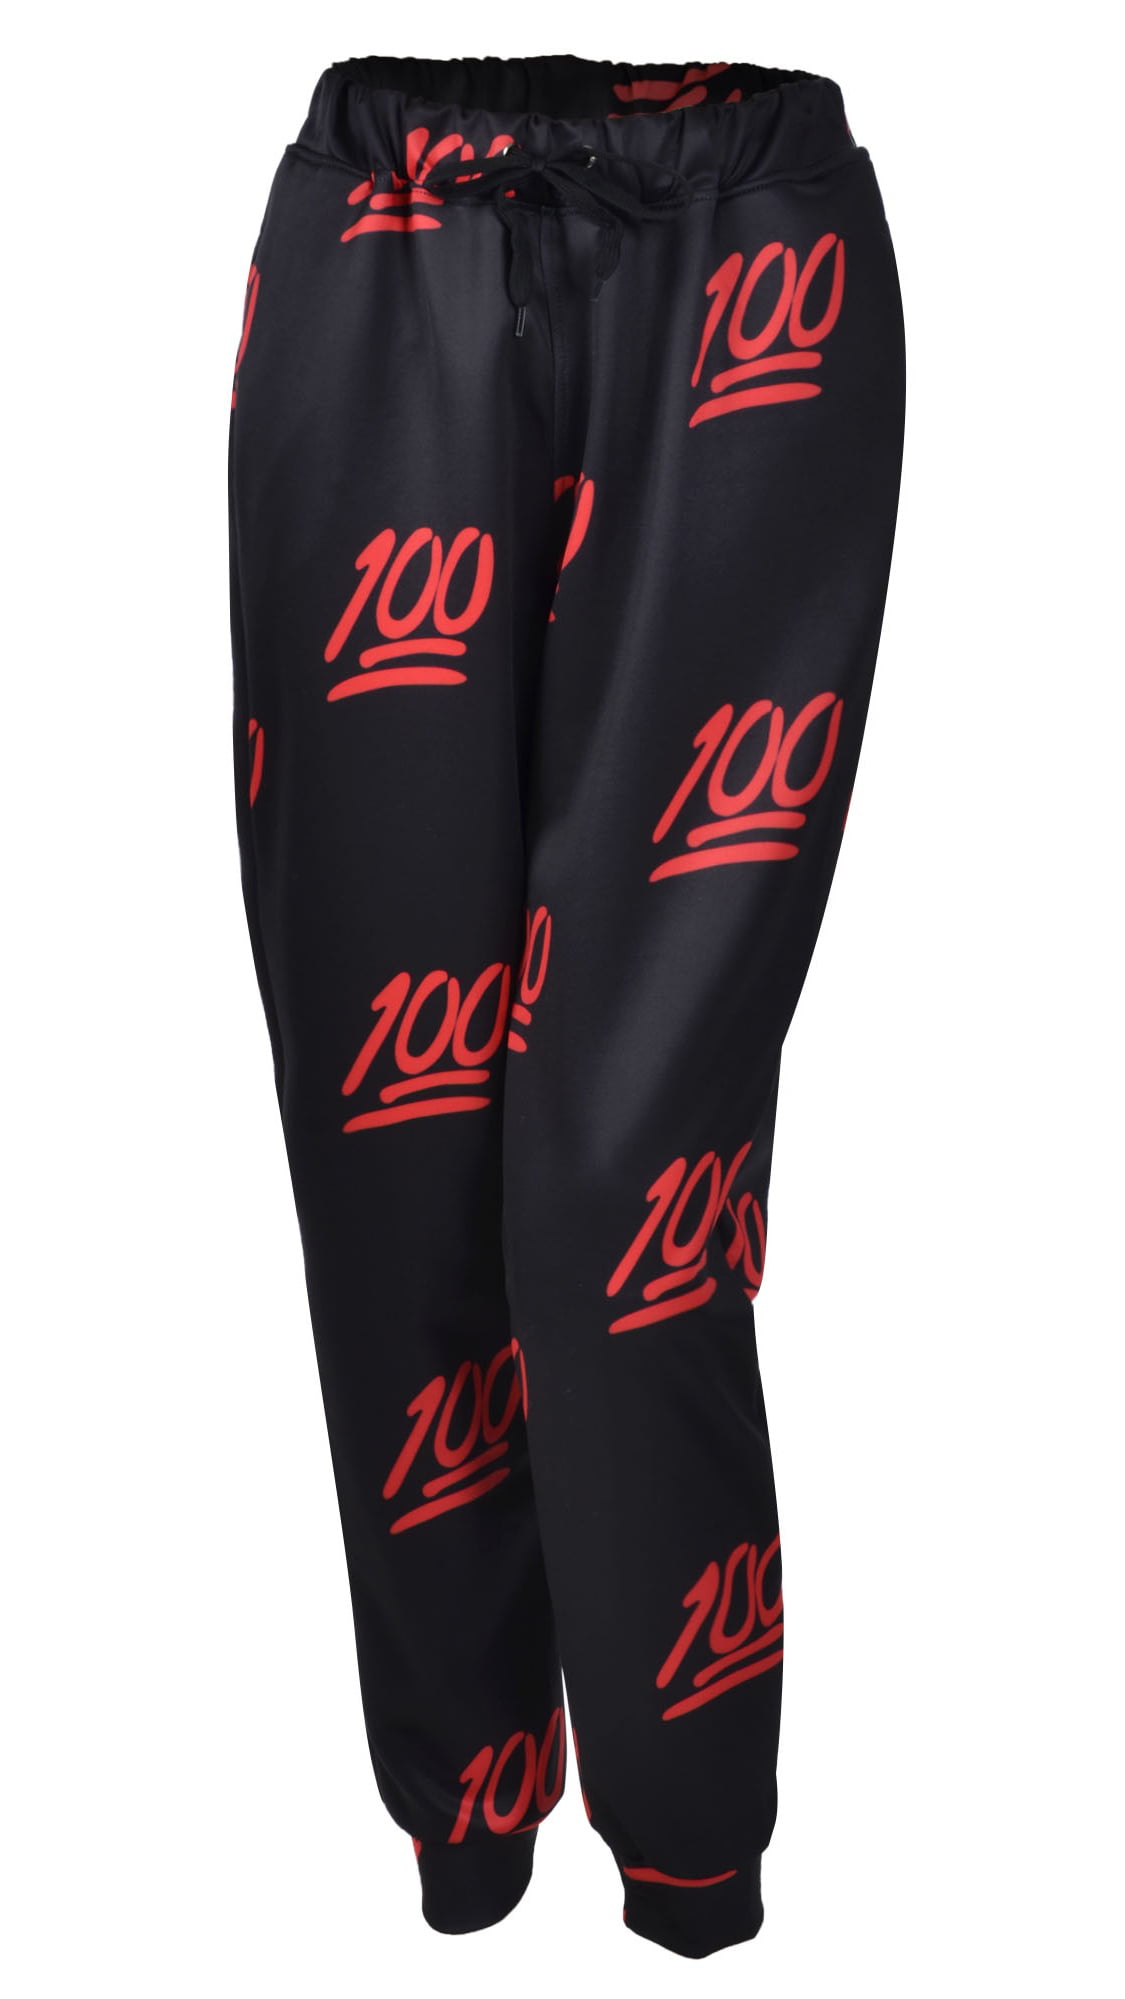 Unisex Hipster 100 Score Emoji 3D Sweatpants joggers Sportswear Pants